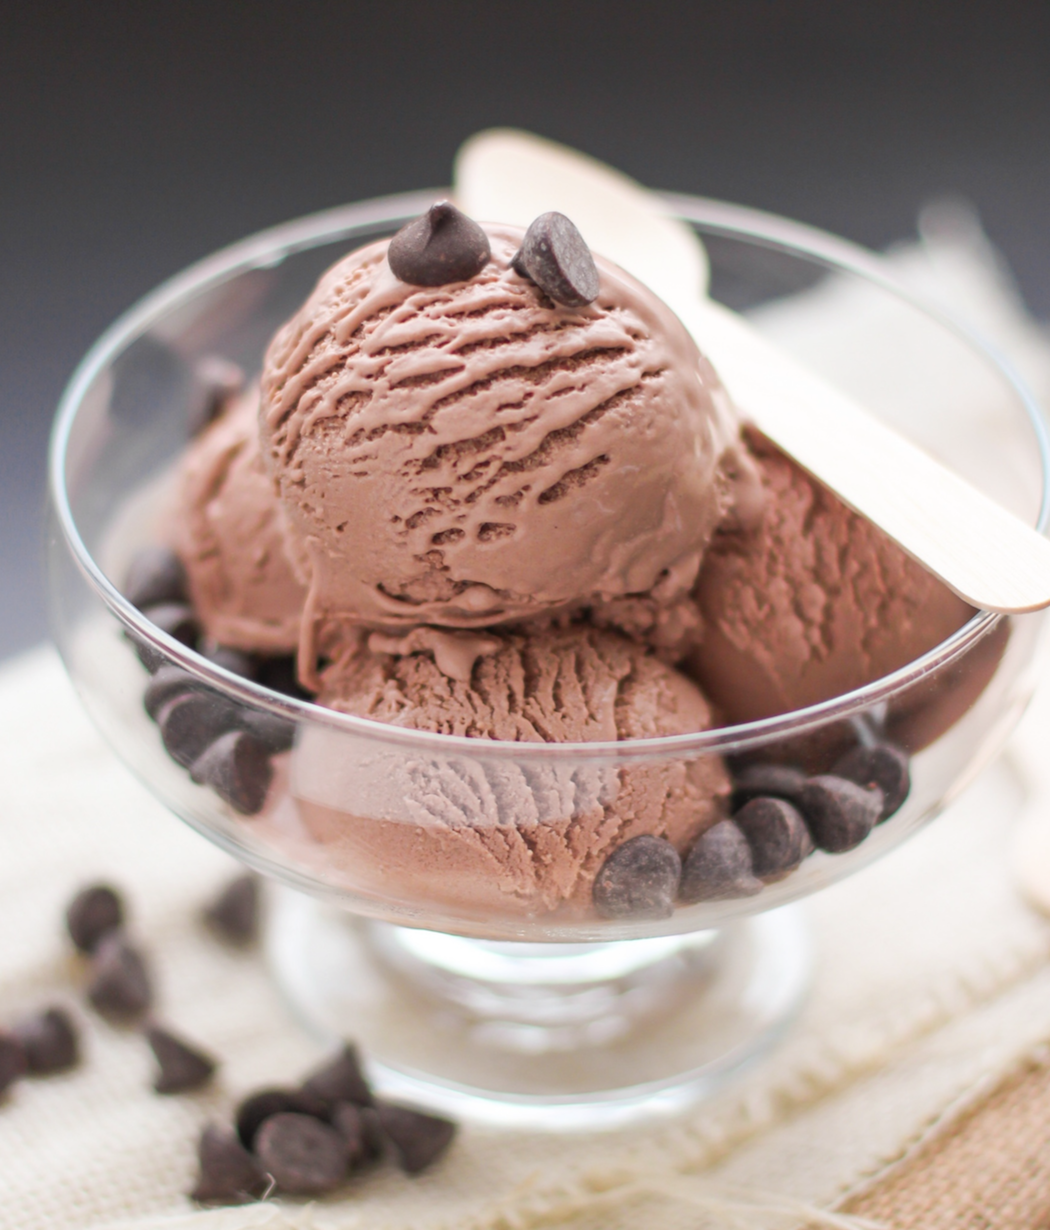 Καλοκαιρινή απόλαυση: Σπιτικό σοκολατένιο frozen yogurt με 3 μόνο υλικά!